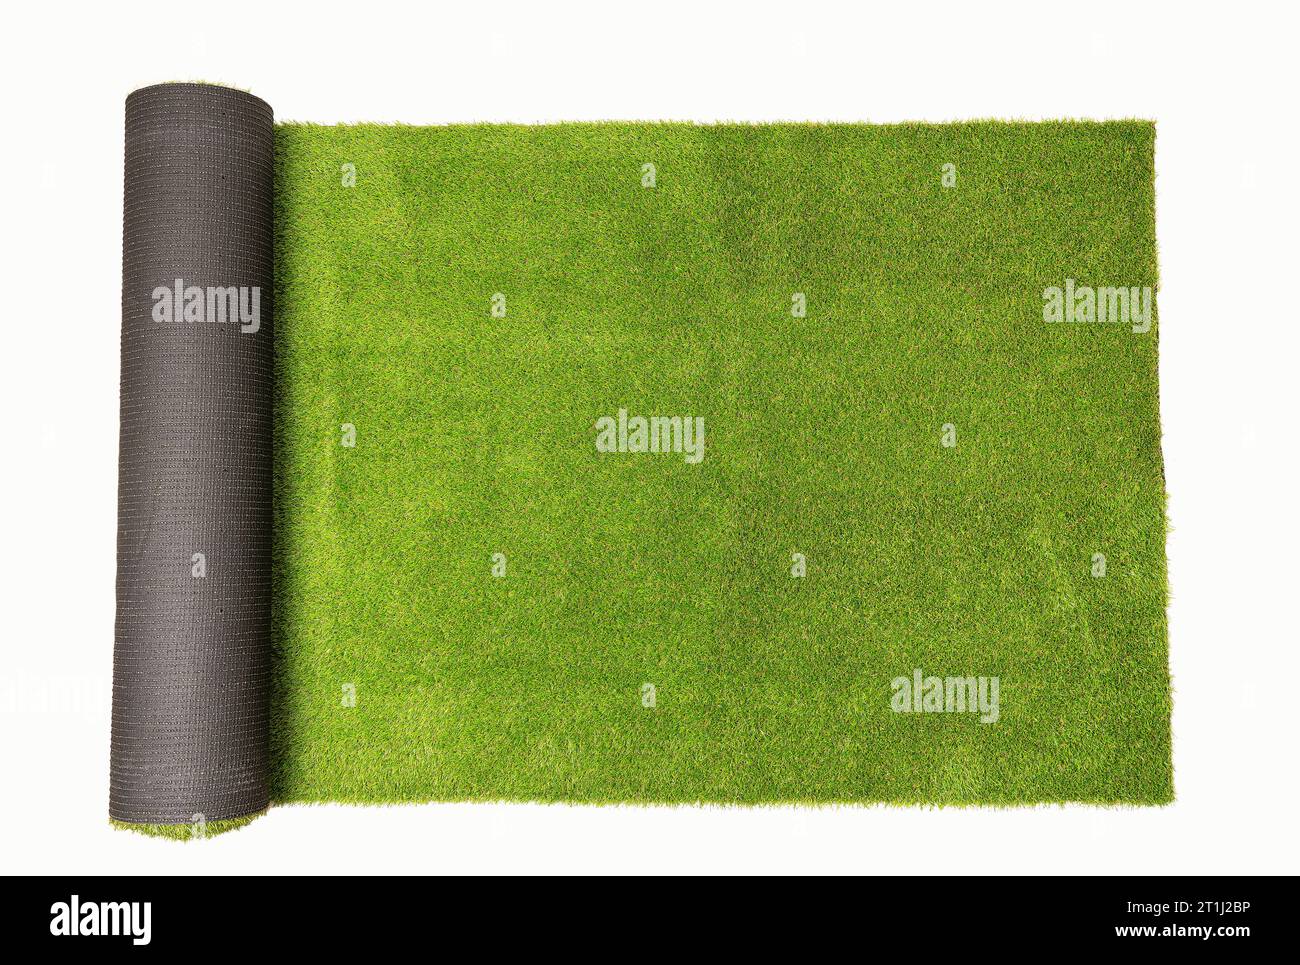 Vue de dessus de l'herbe verte enroulée artificielle, isolée sur fond blanc Banque D'Images